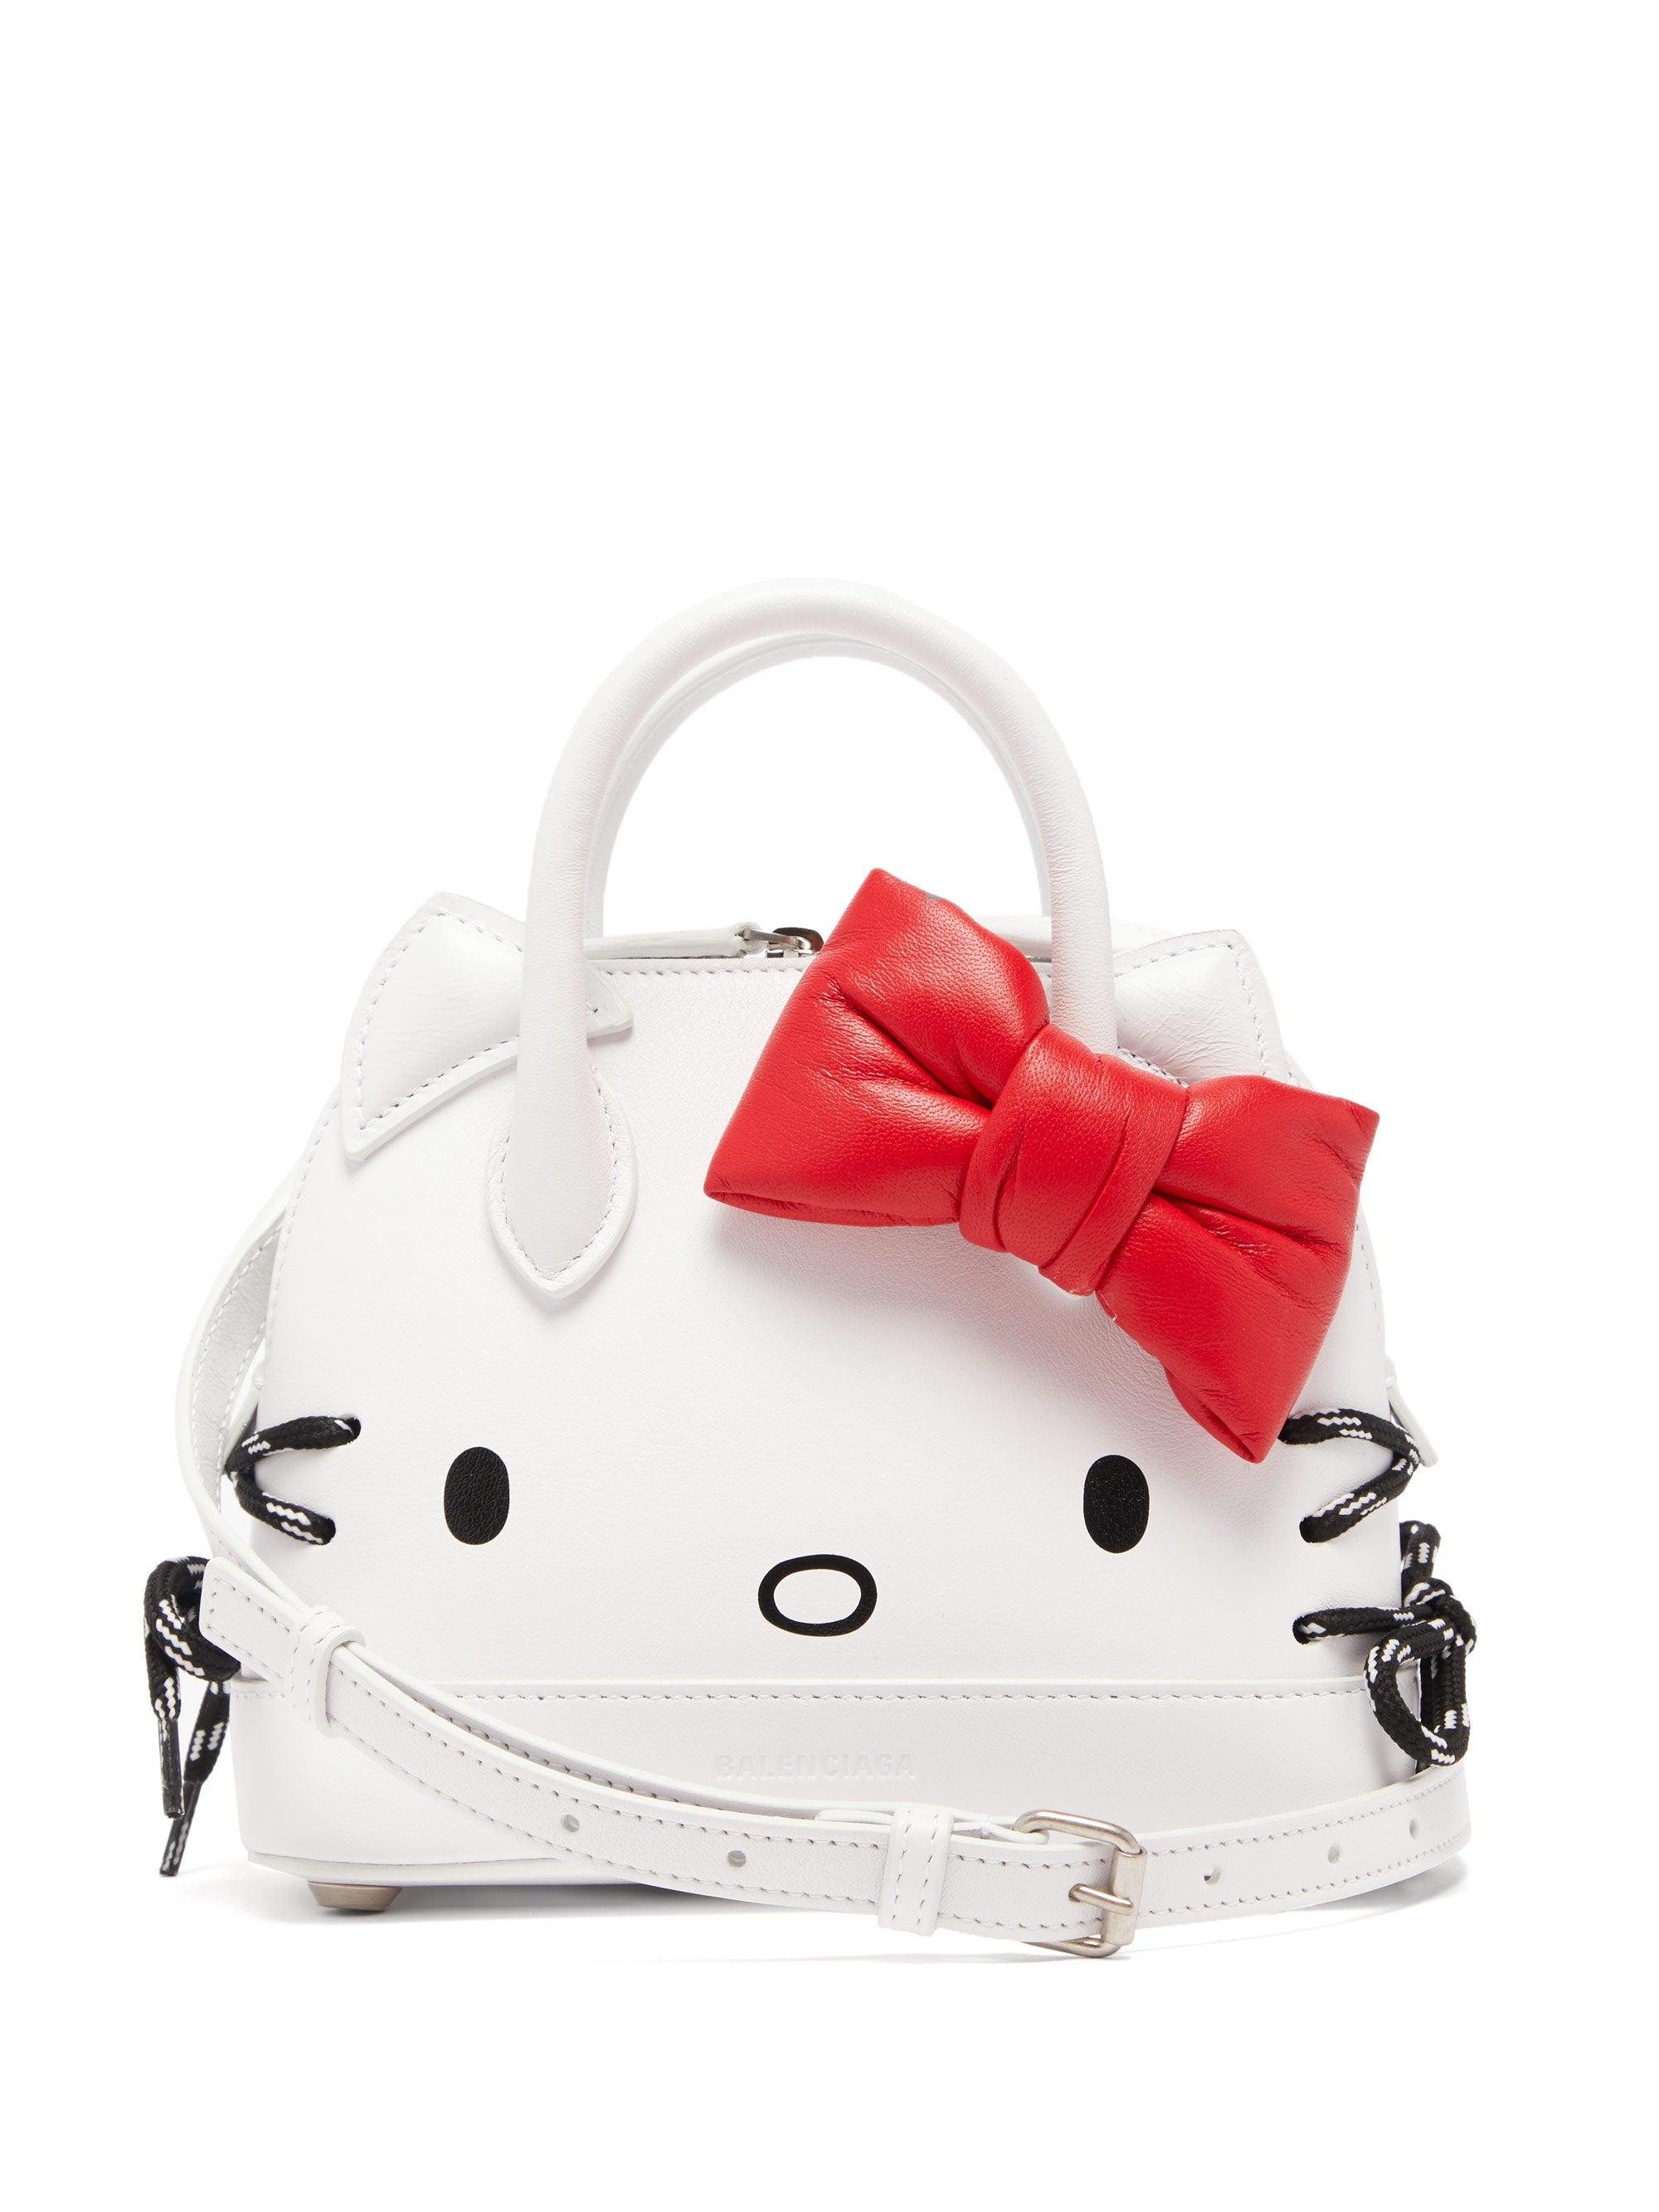 Balenciaga Hello Kitty Xxs Leather Handbag